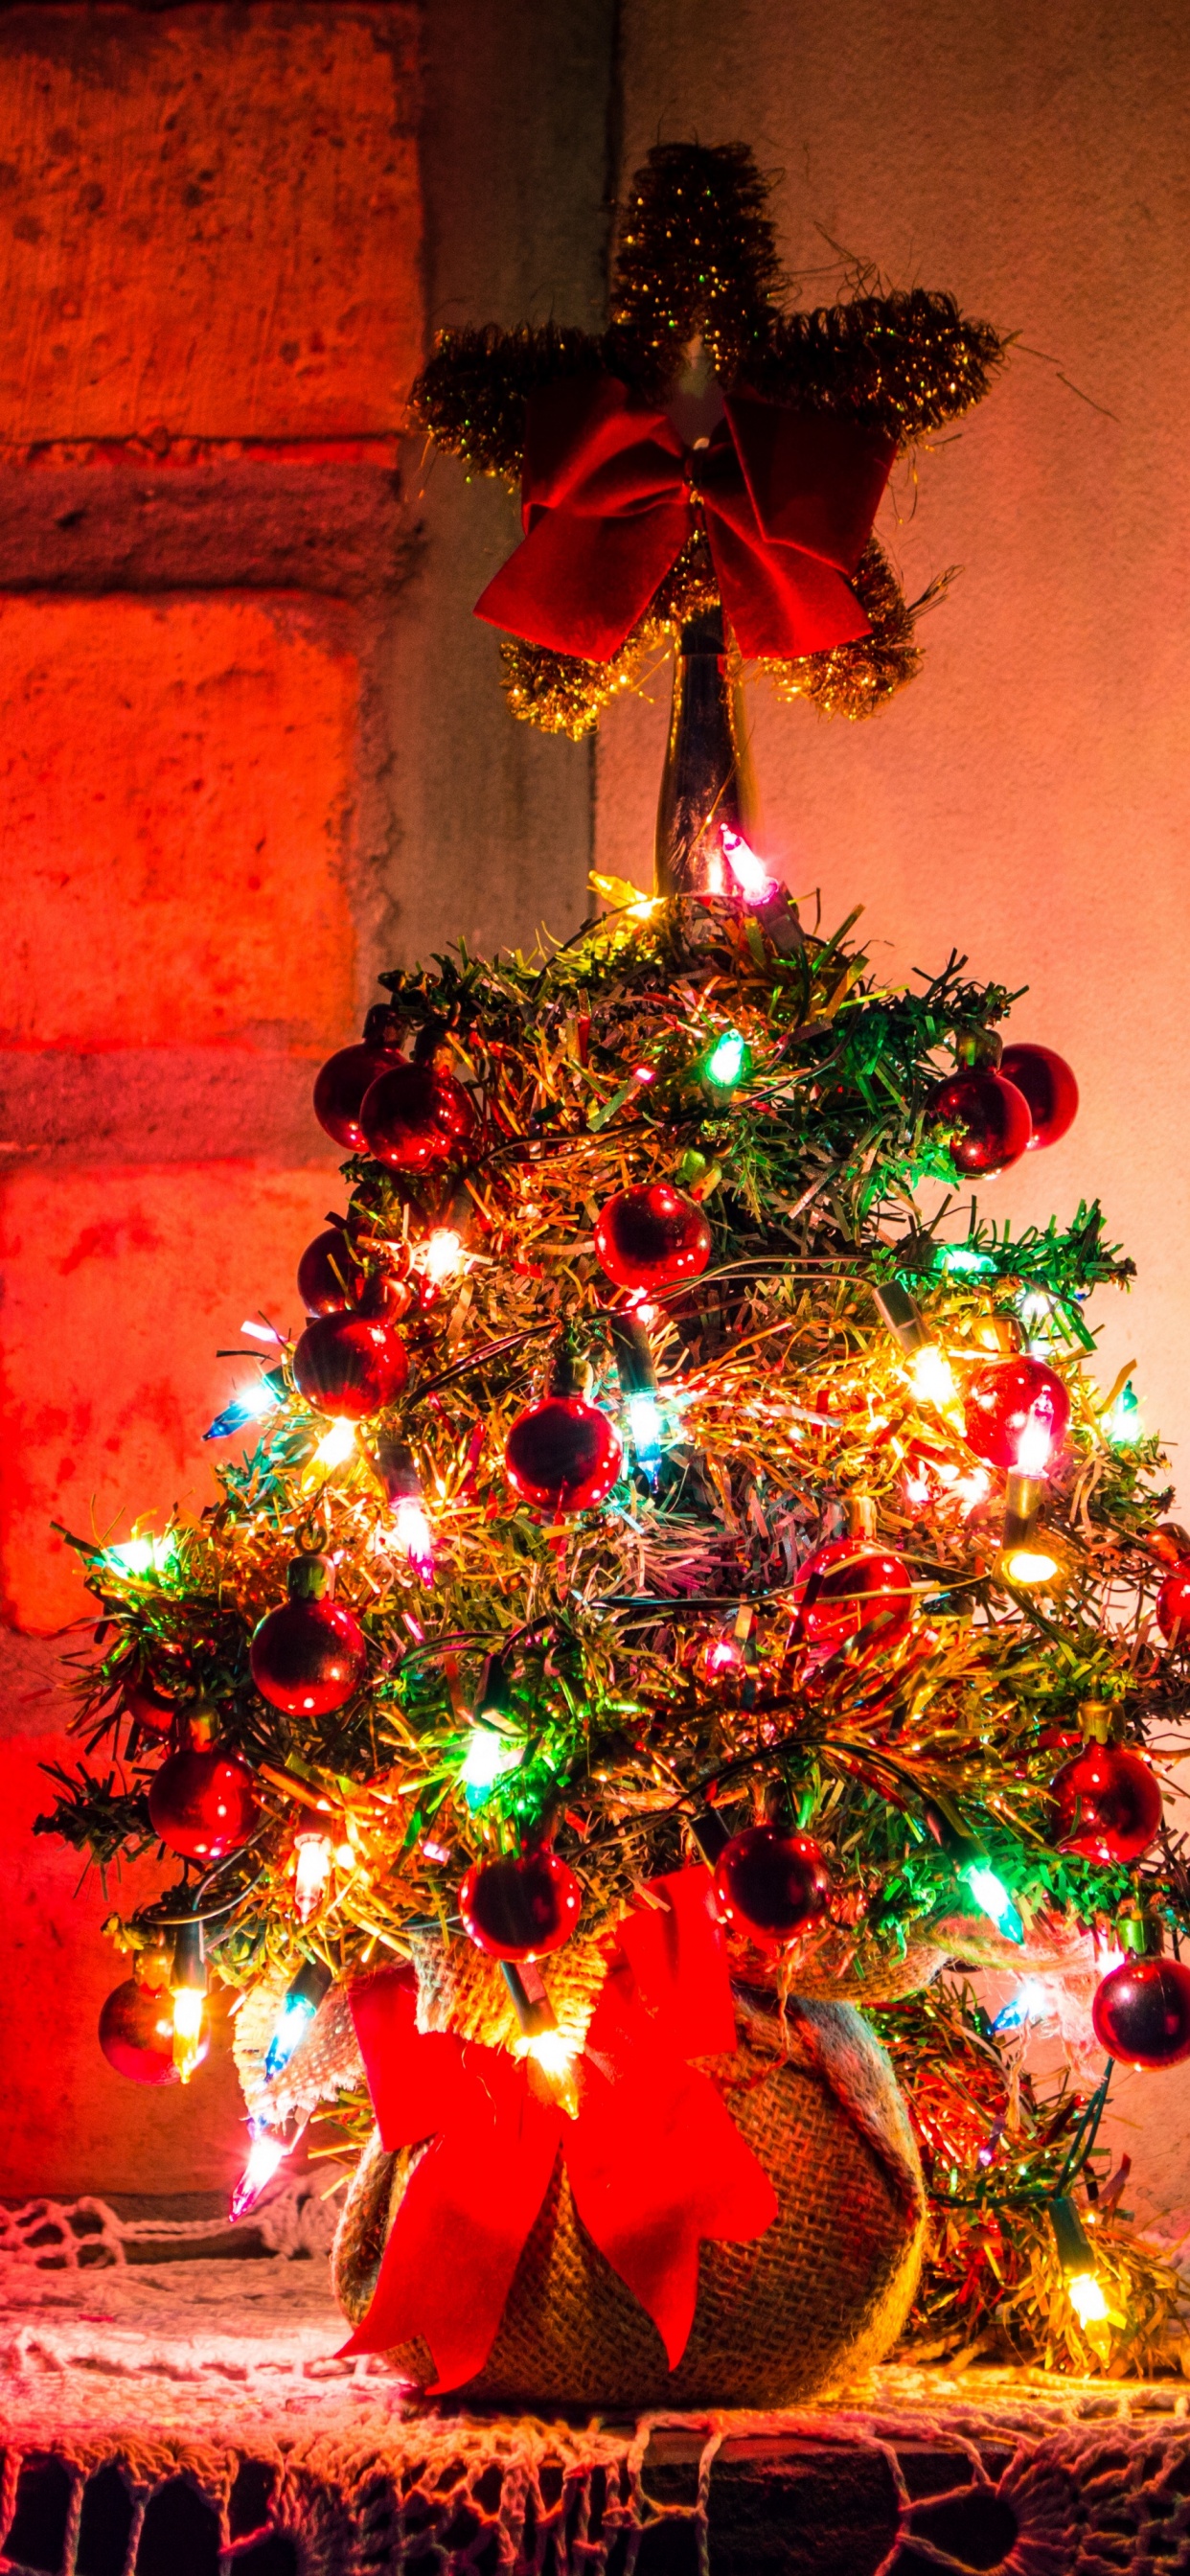 圣诞节那天, 圣诞装饰, 圣诞树, 新的一年, 圣诞节的装饰品 壁纸 1242x2688 允许